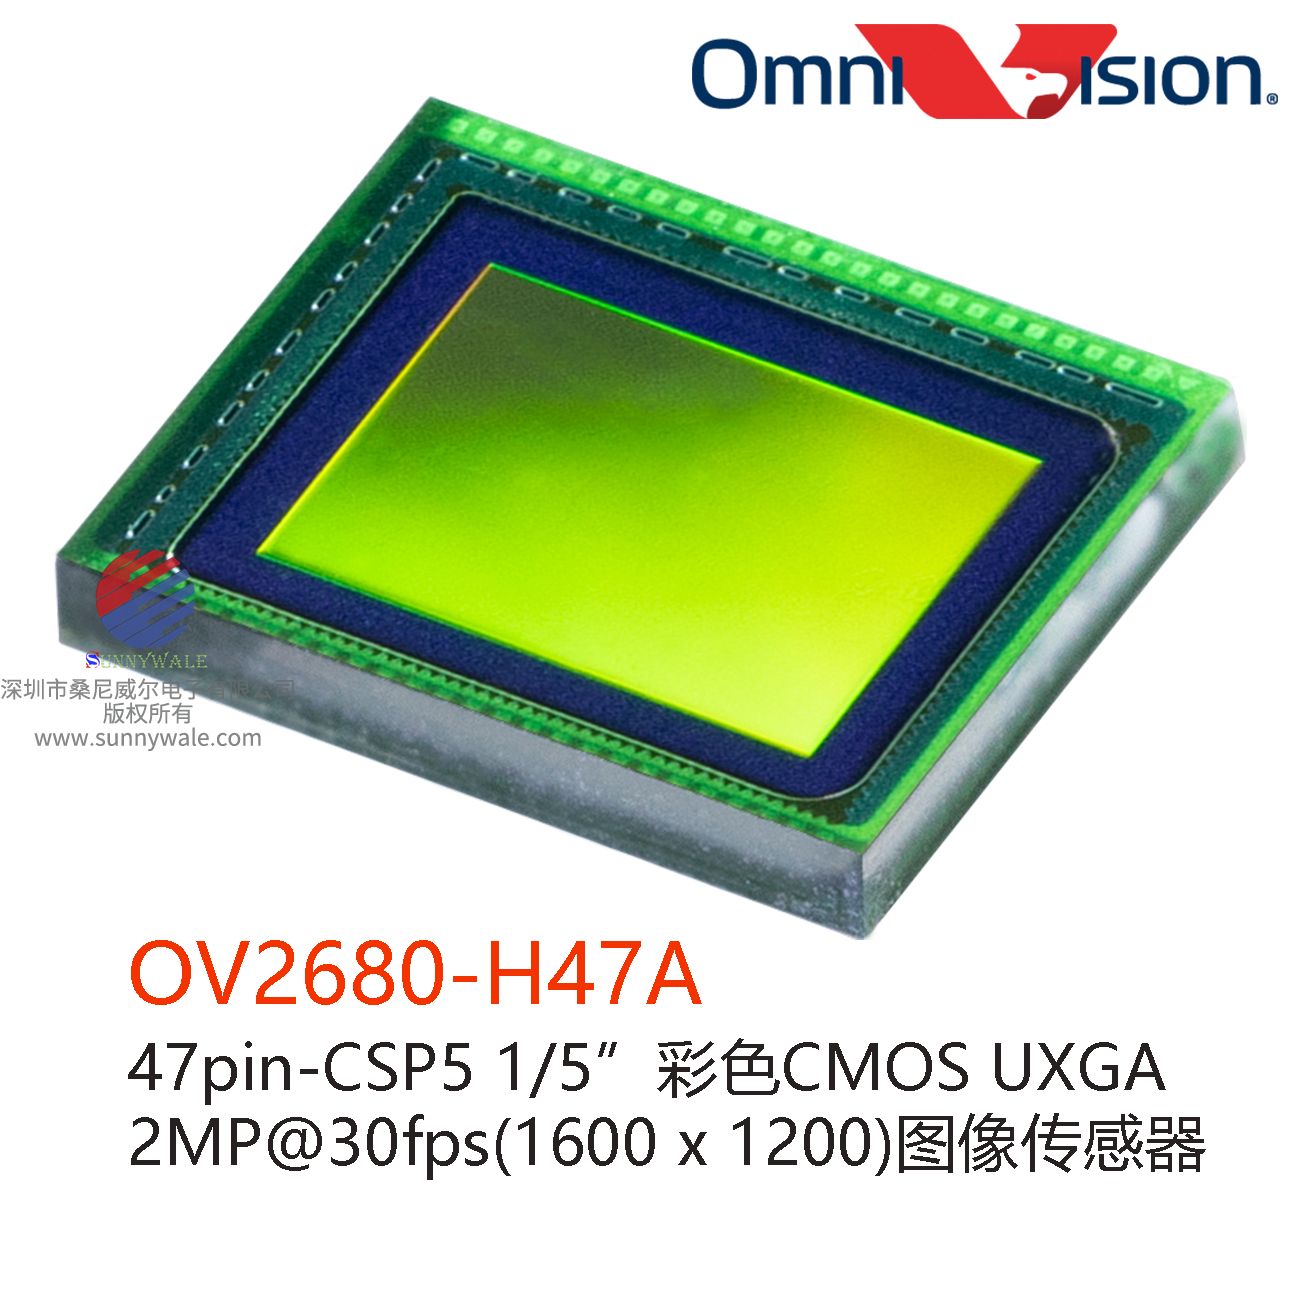 OmniVision OV2680-H47A